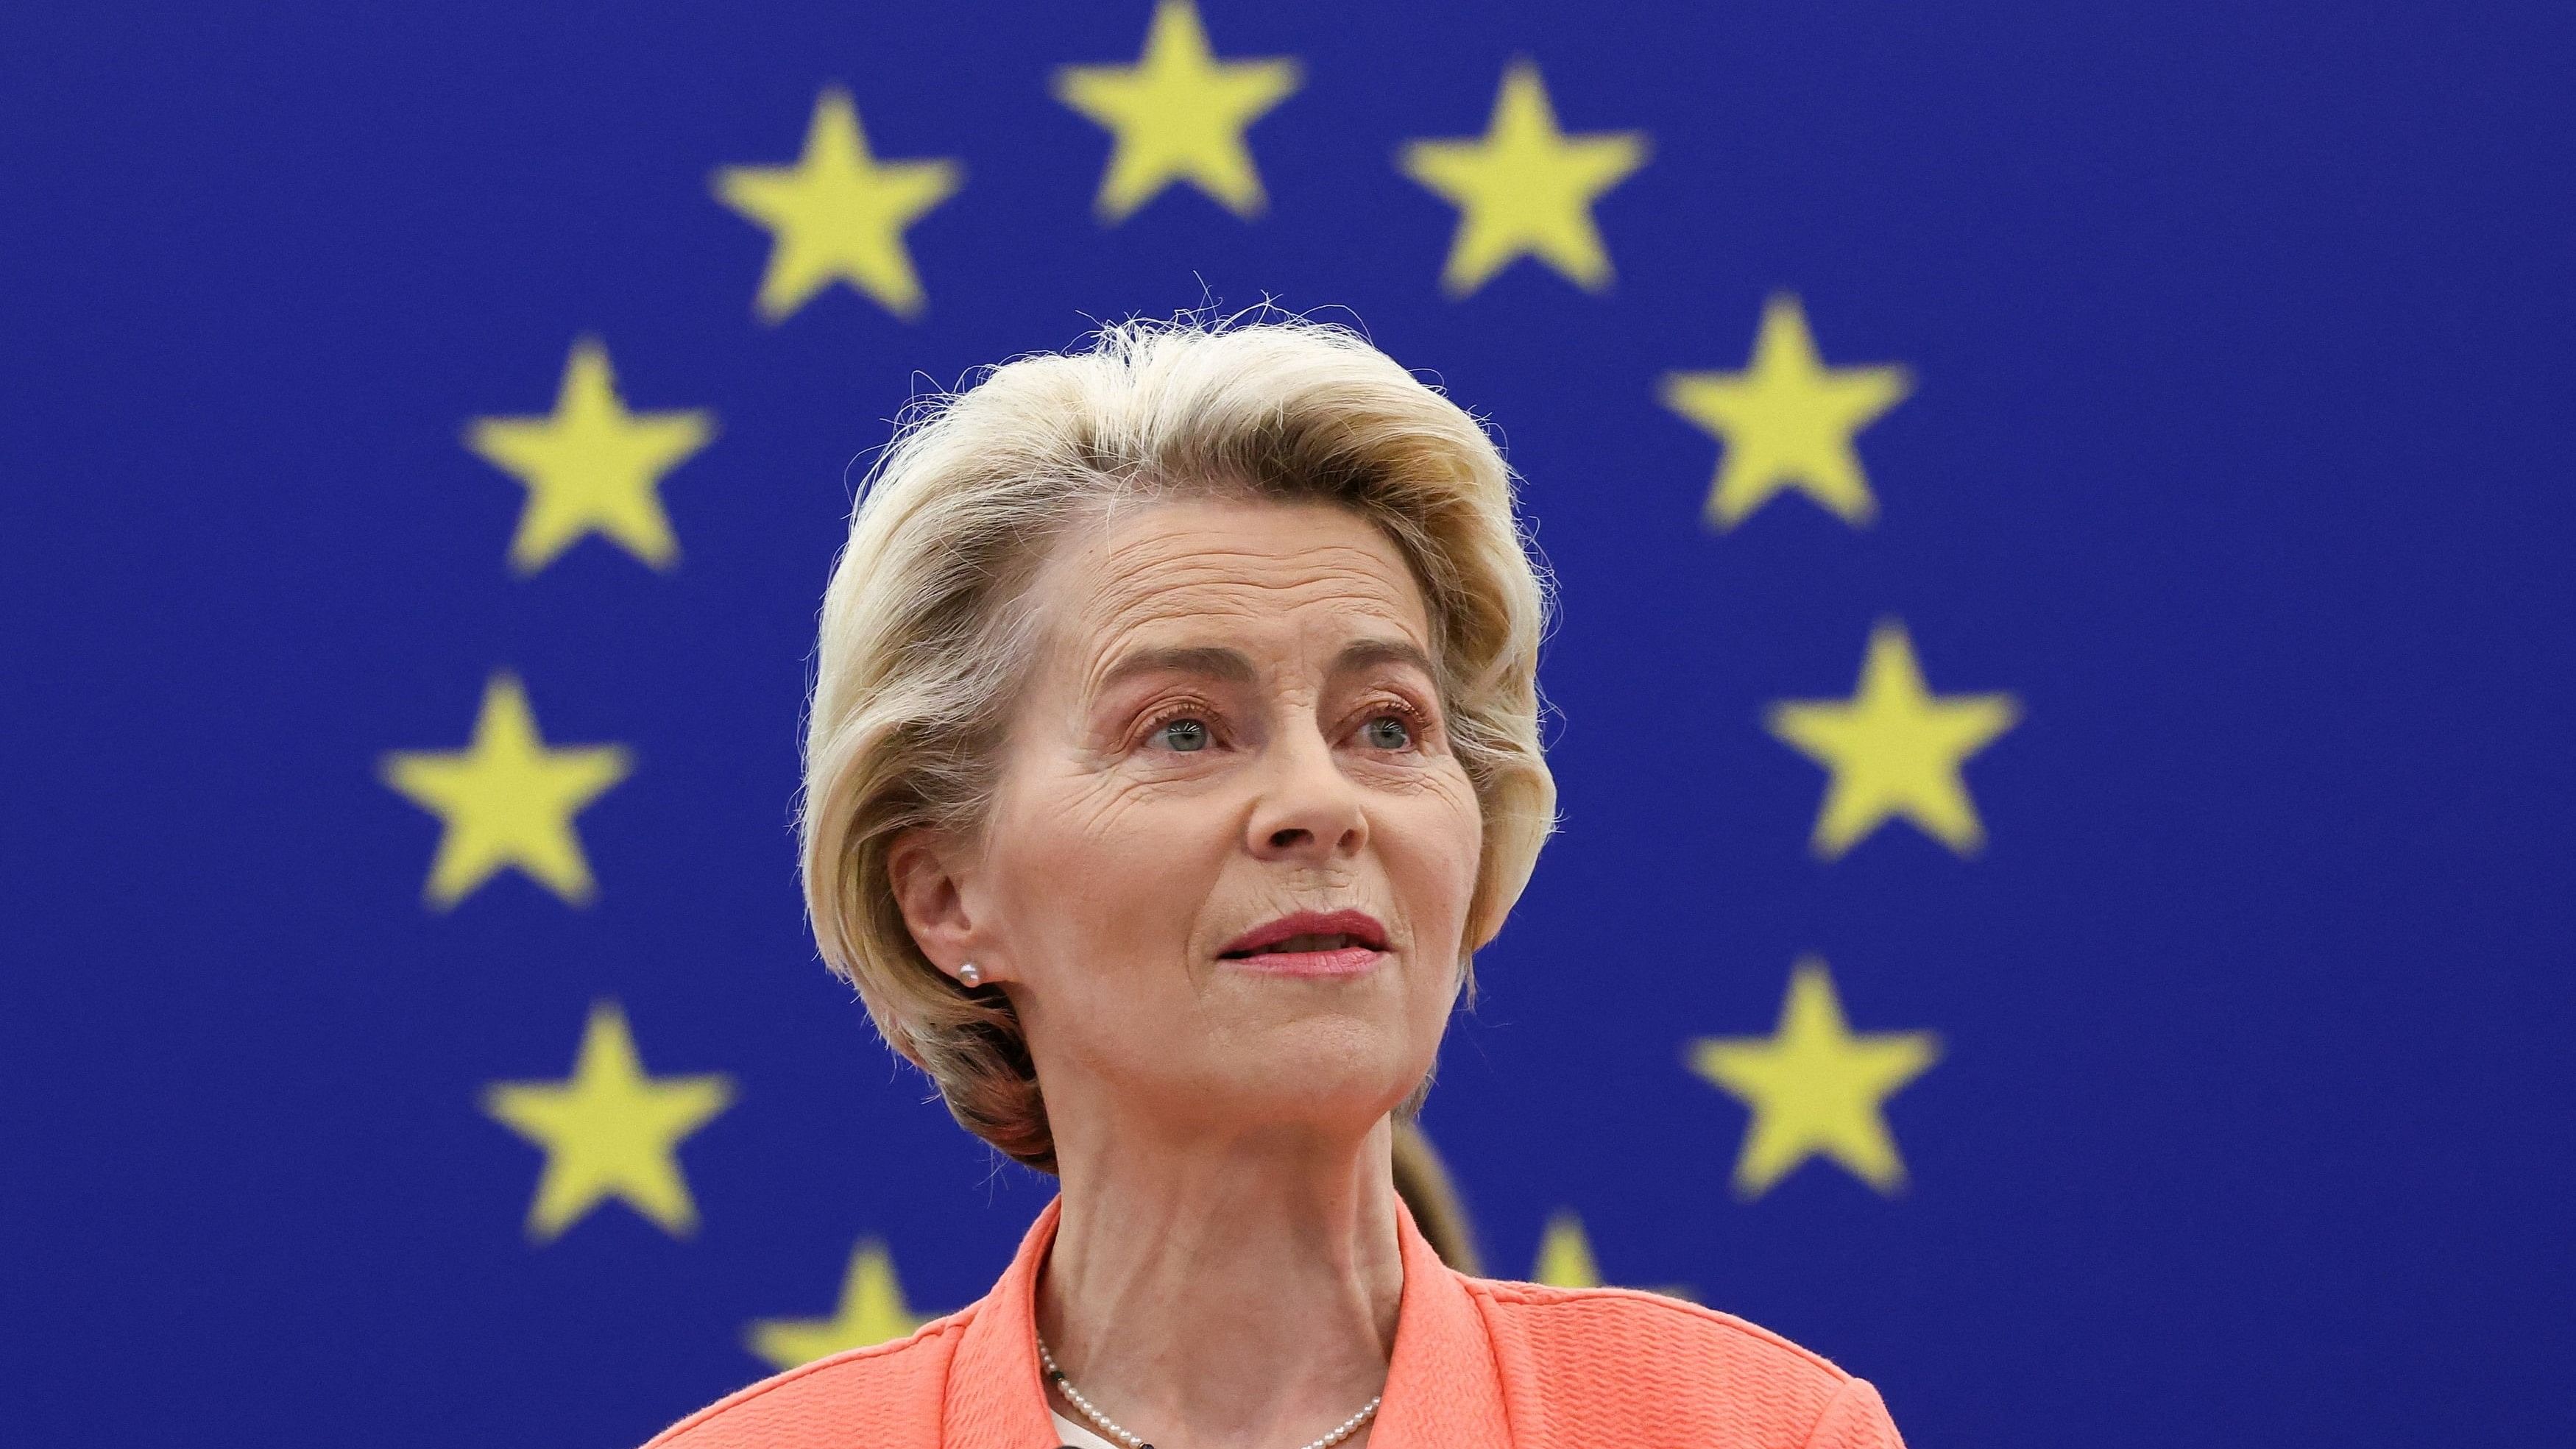 <div class="paragraphs"><p>European Commission President Ursula von der Leyen.</p></div>